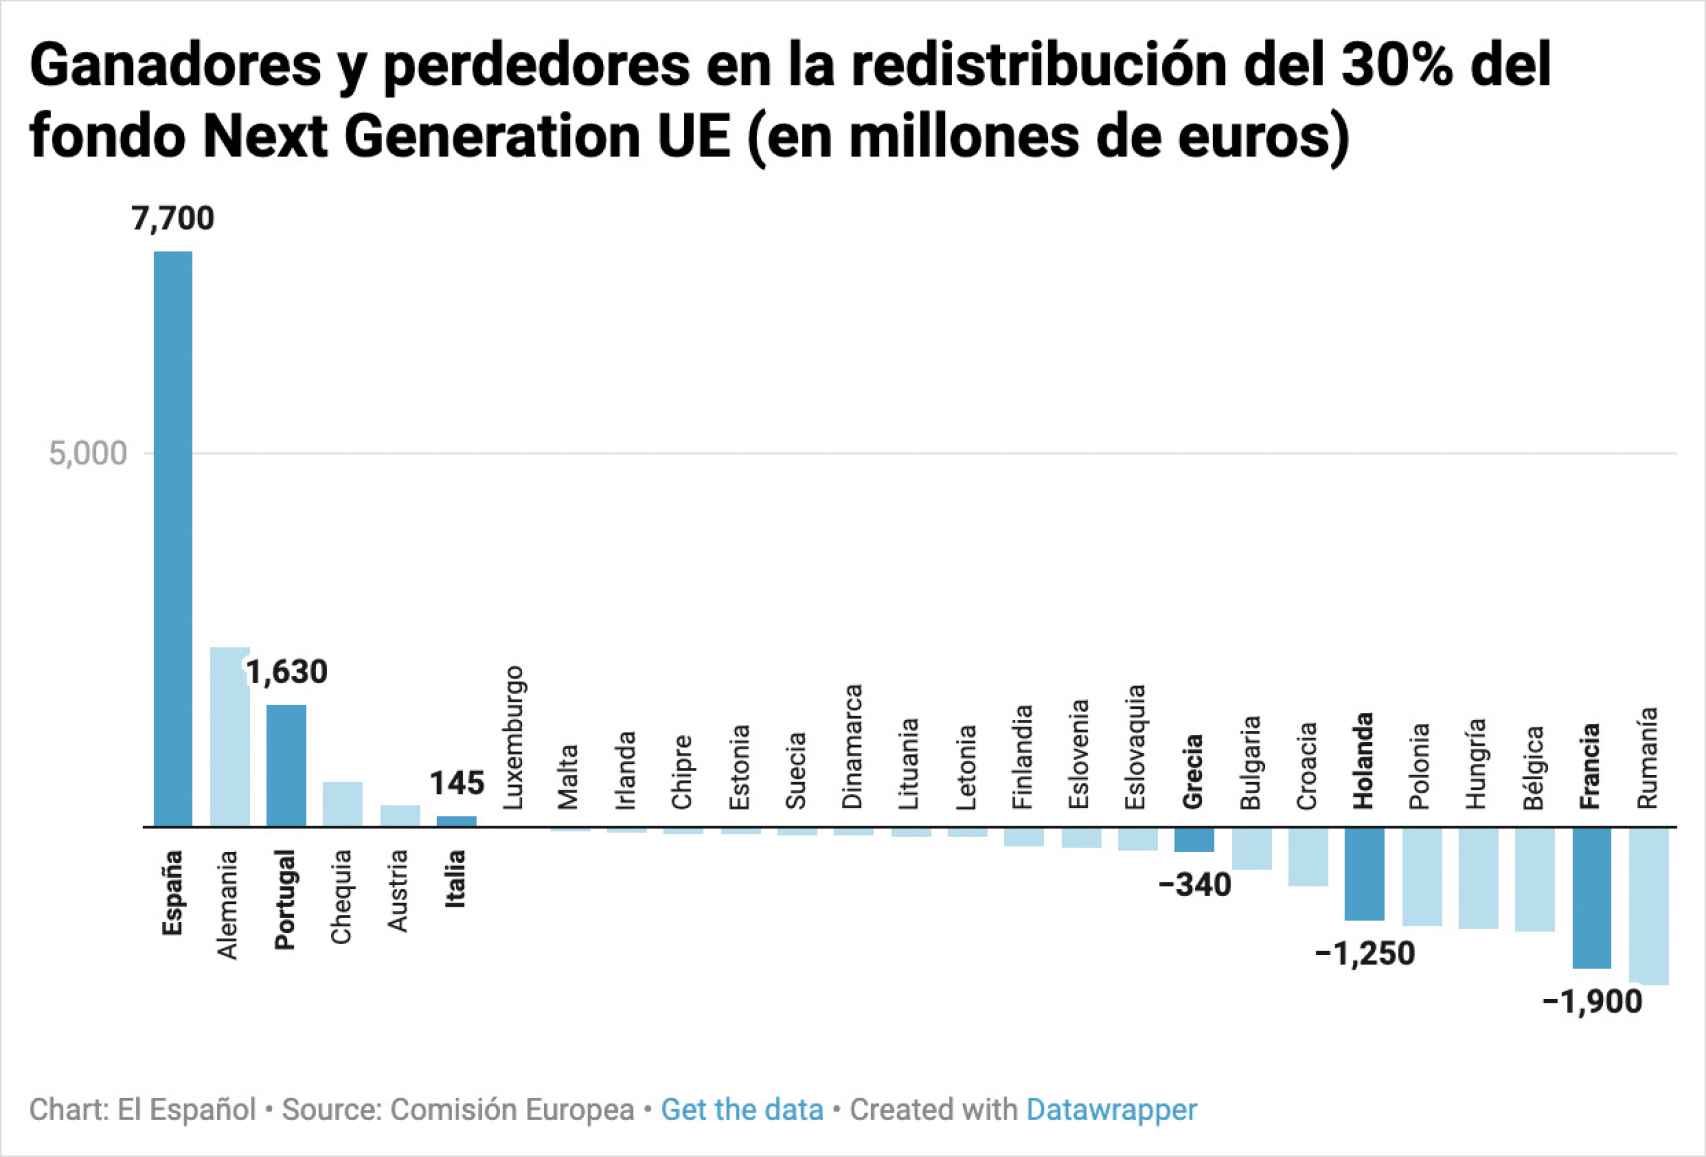 Ganadores y perdedores en la redistribución del 30% del fondo Next Generation UE